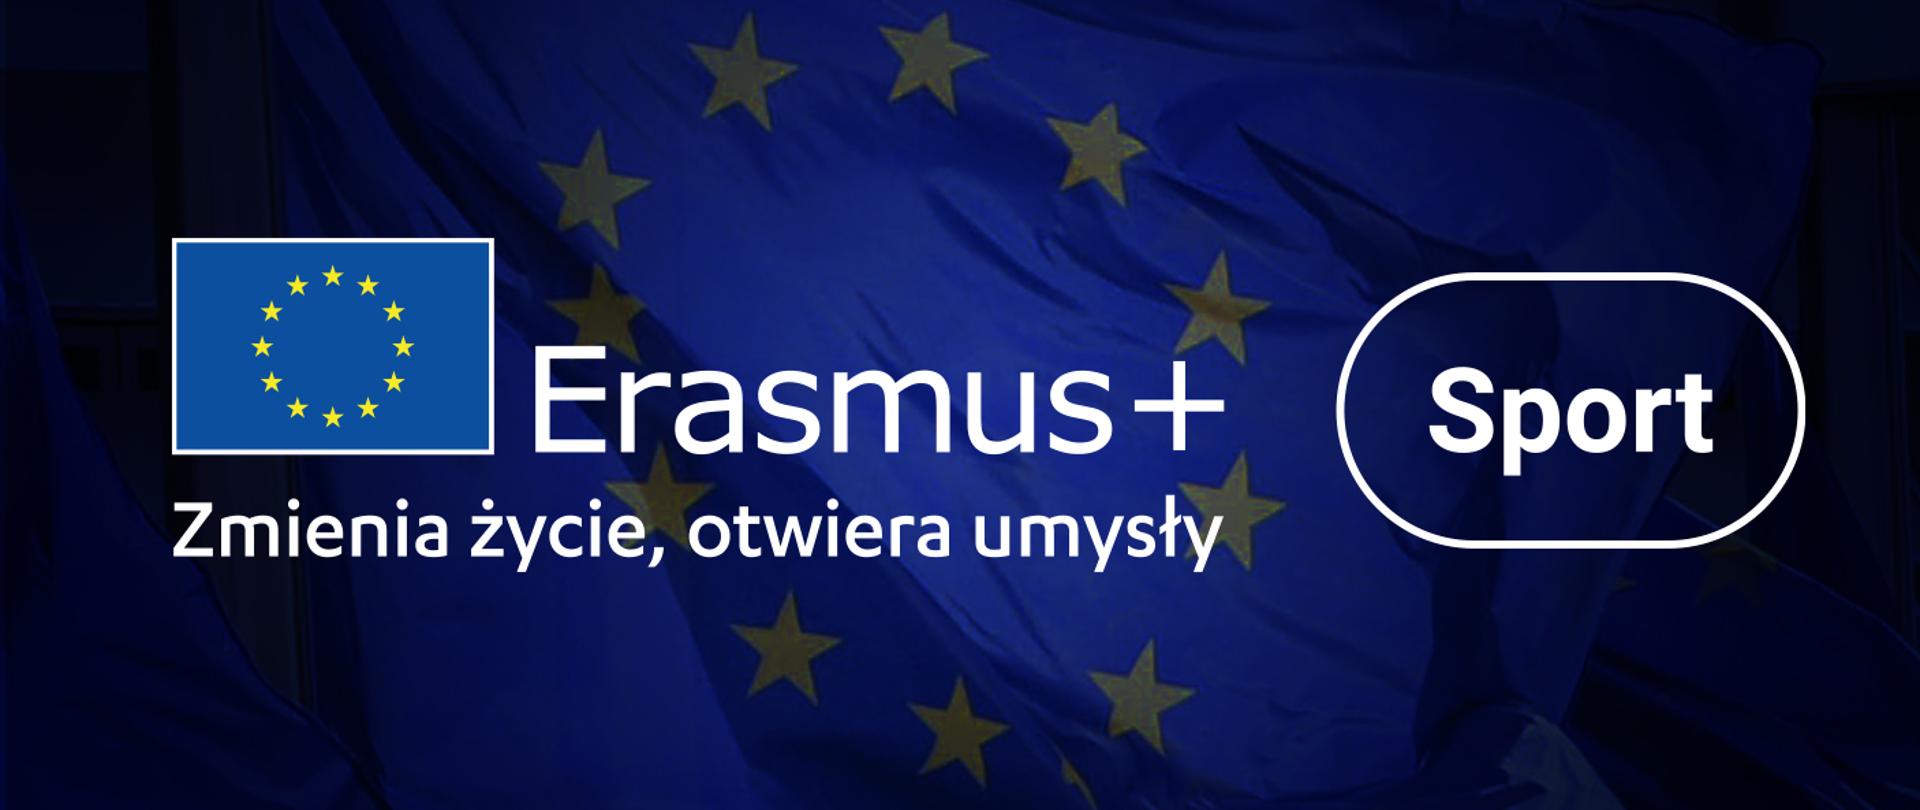 Nabór wniosków do programu Eramus+ SPORT 2023. Grafika z flagą Unii Europejskiej i napisem Erasmus+ Zmienia życie, otwiera umysły